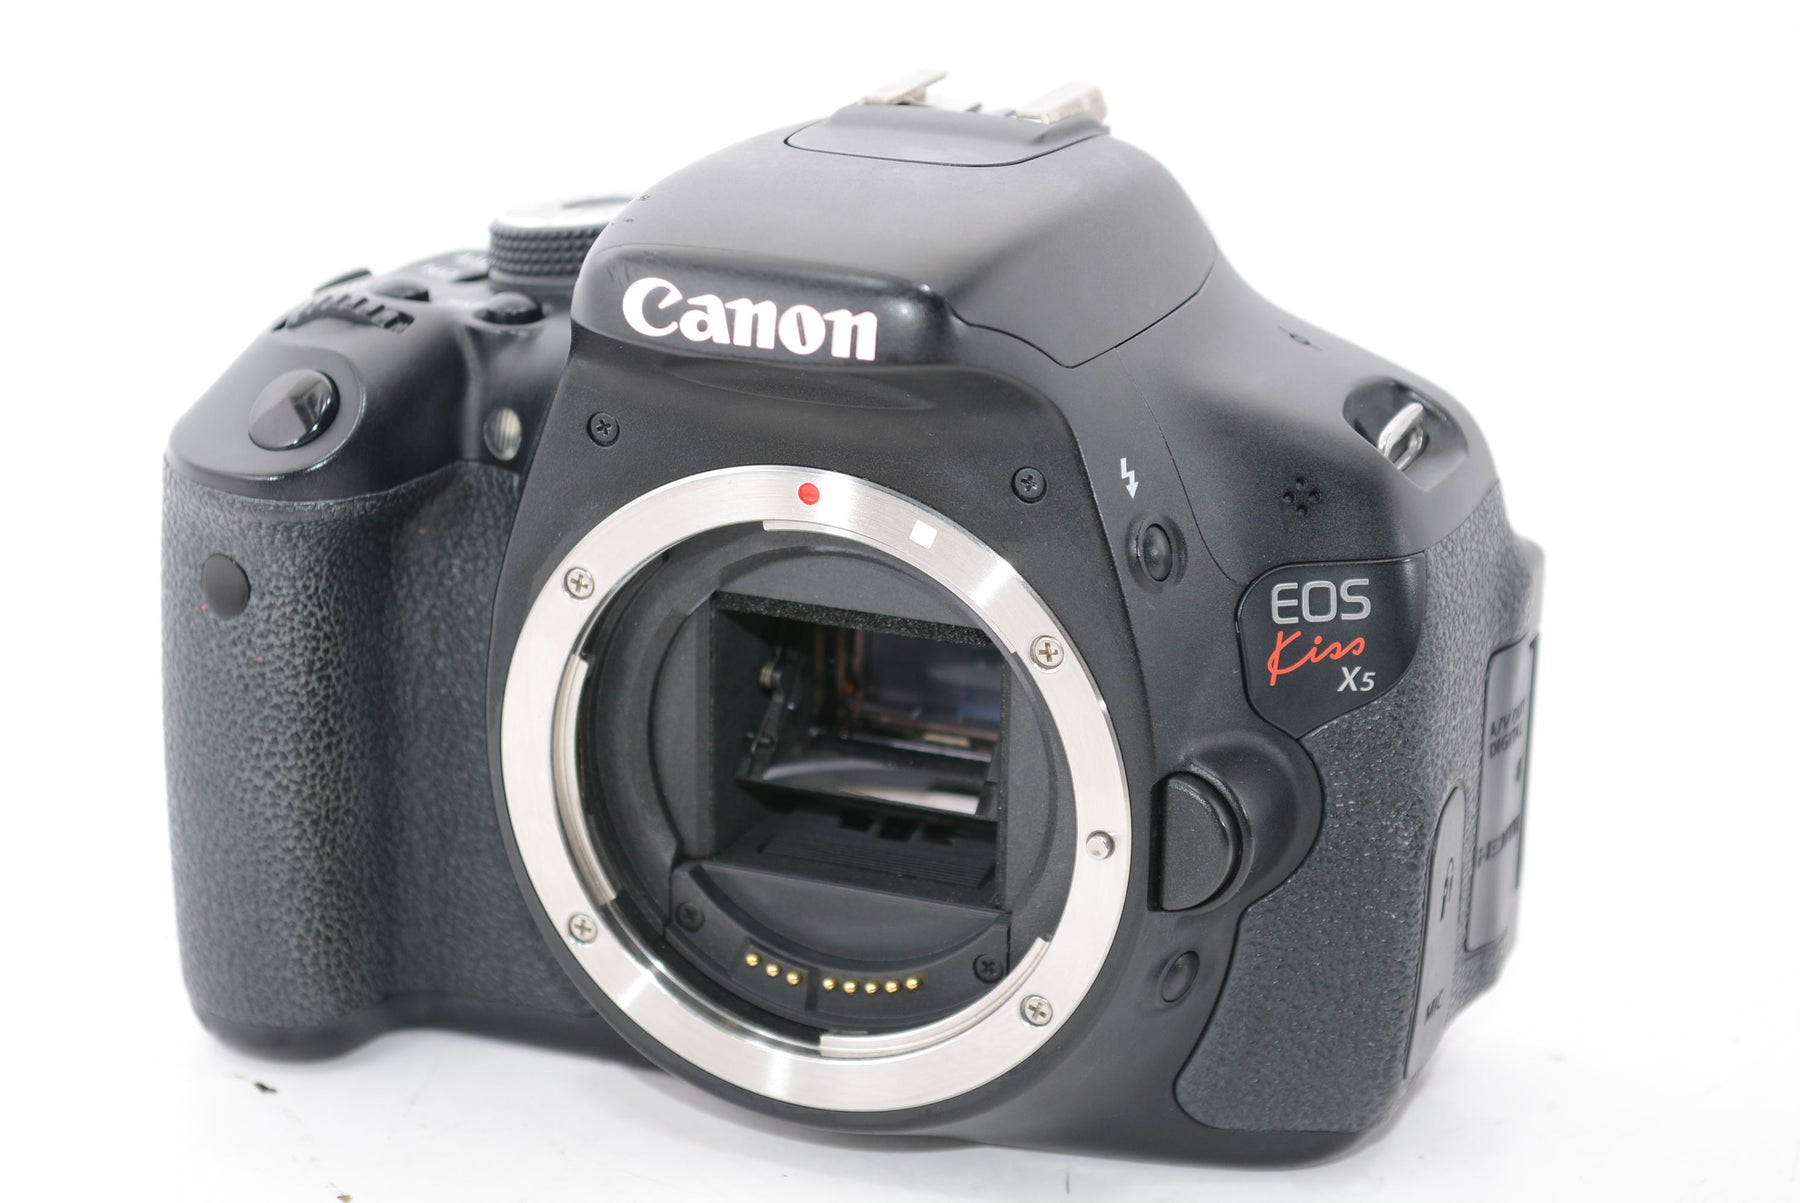 【外観並級】Canon デジタル一眼レフカメラ EOS Kiss X5 レンズキット EF-S18-55mm F3.5-5.6 IS II付属 KISSX5-1855IS2LK